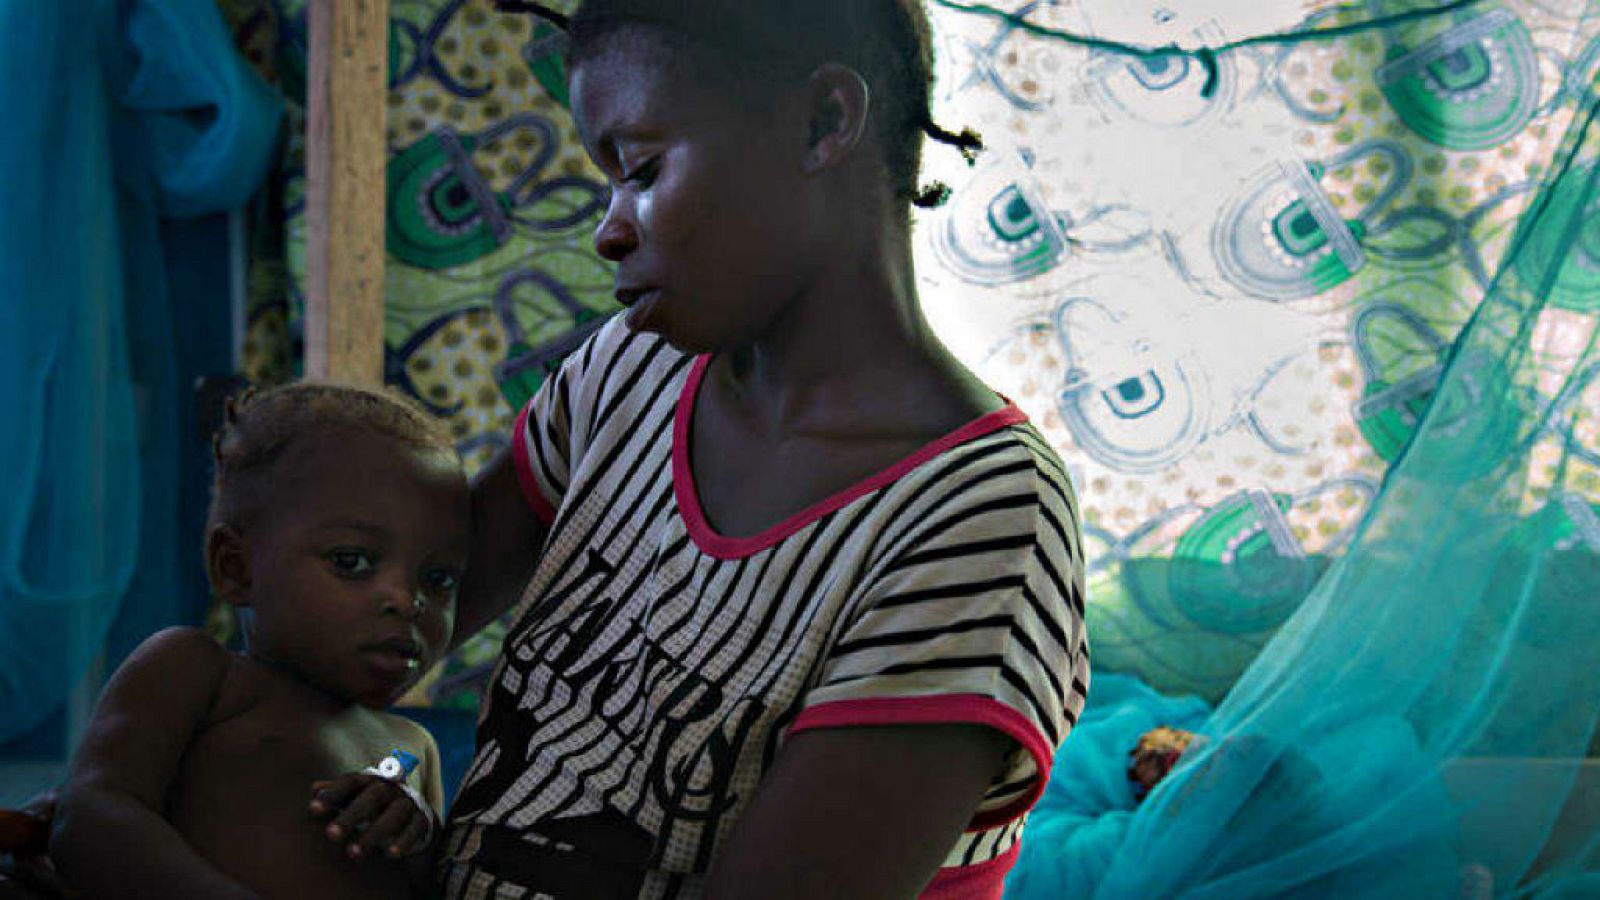 Cinco continentes - La malaria, una condena diaria para la R.D. Congo - 26/04/18 - Escuchar ahora